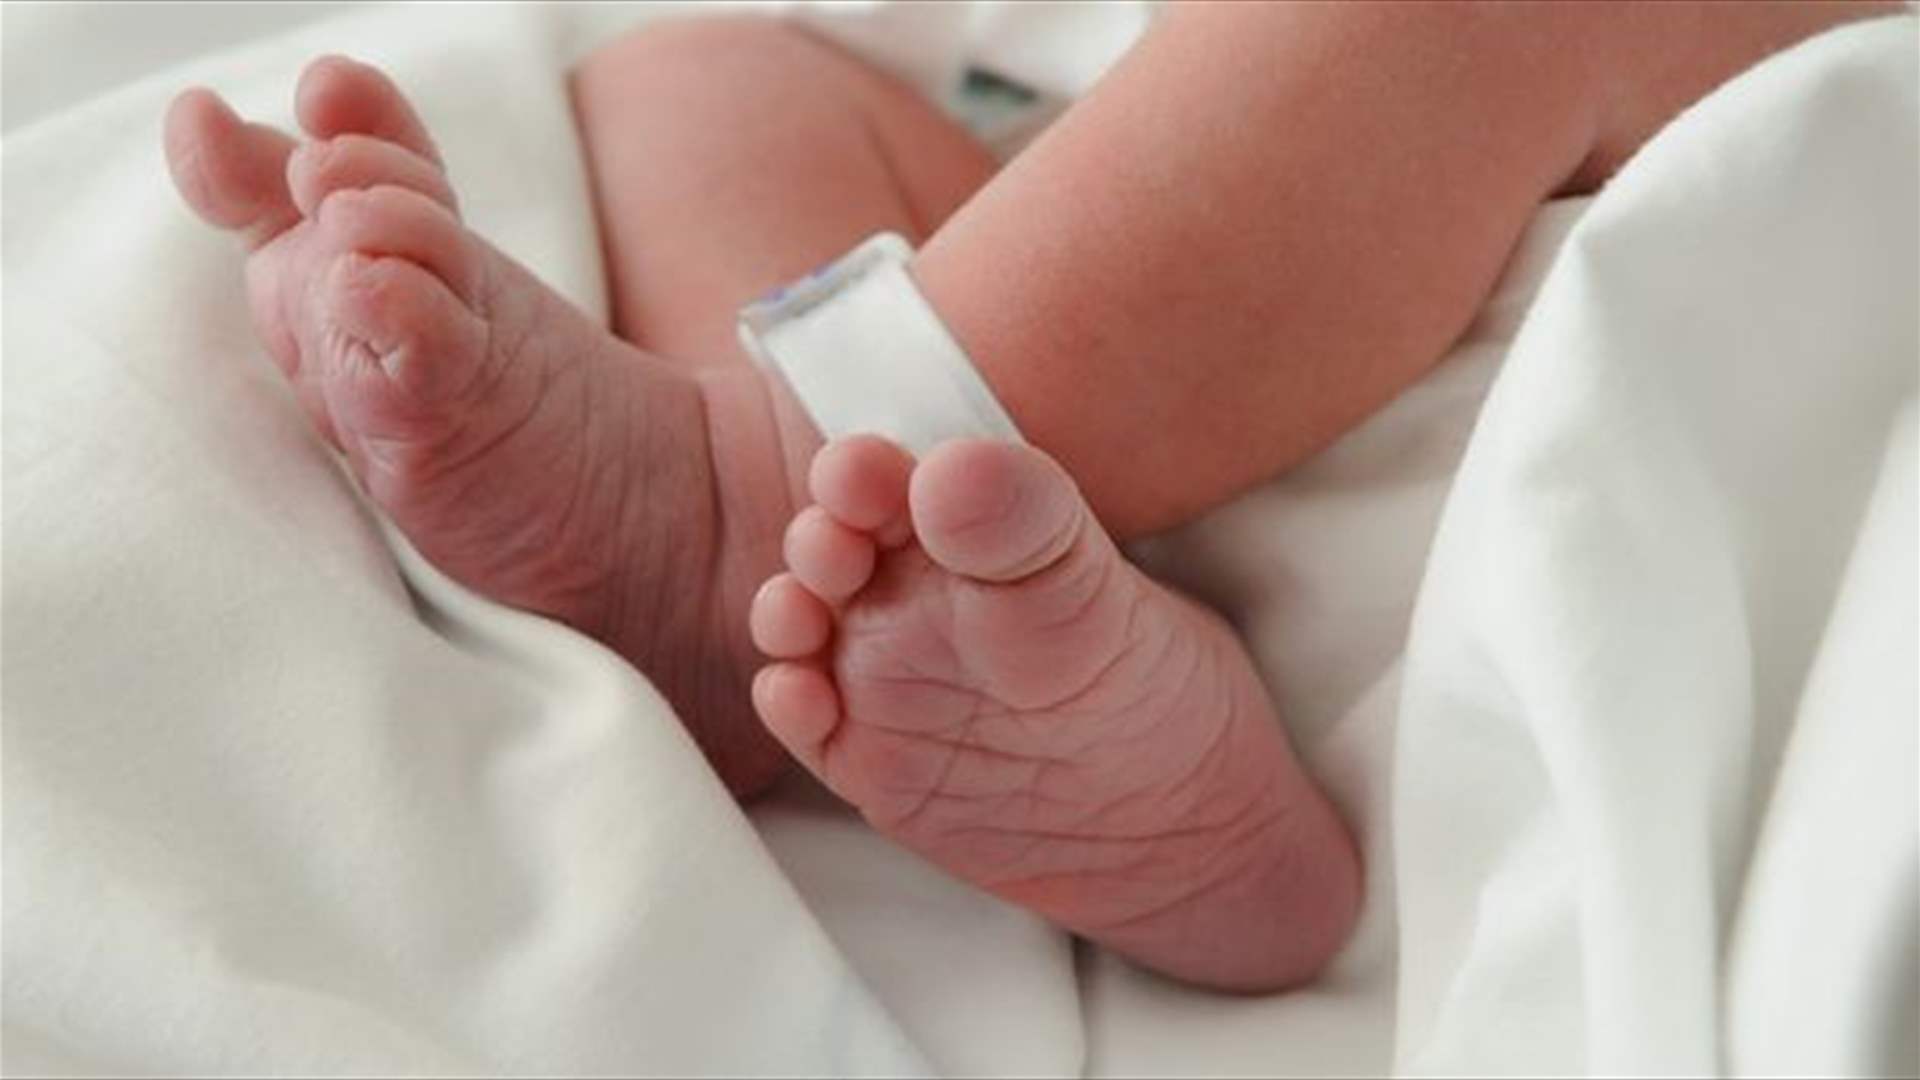 في بريطانيا... ولادة أول طفل بجينات من 3 أشخاص!